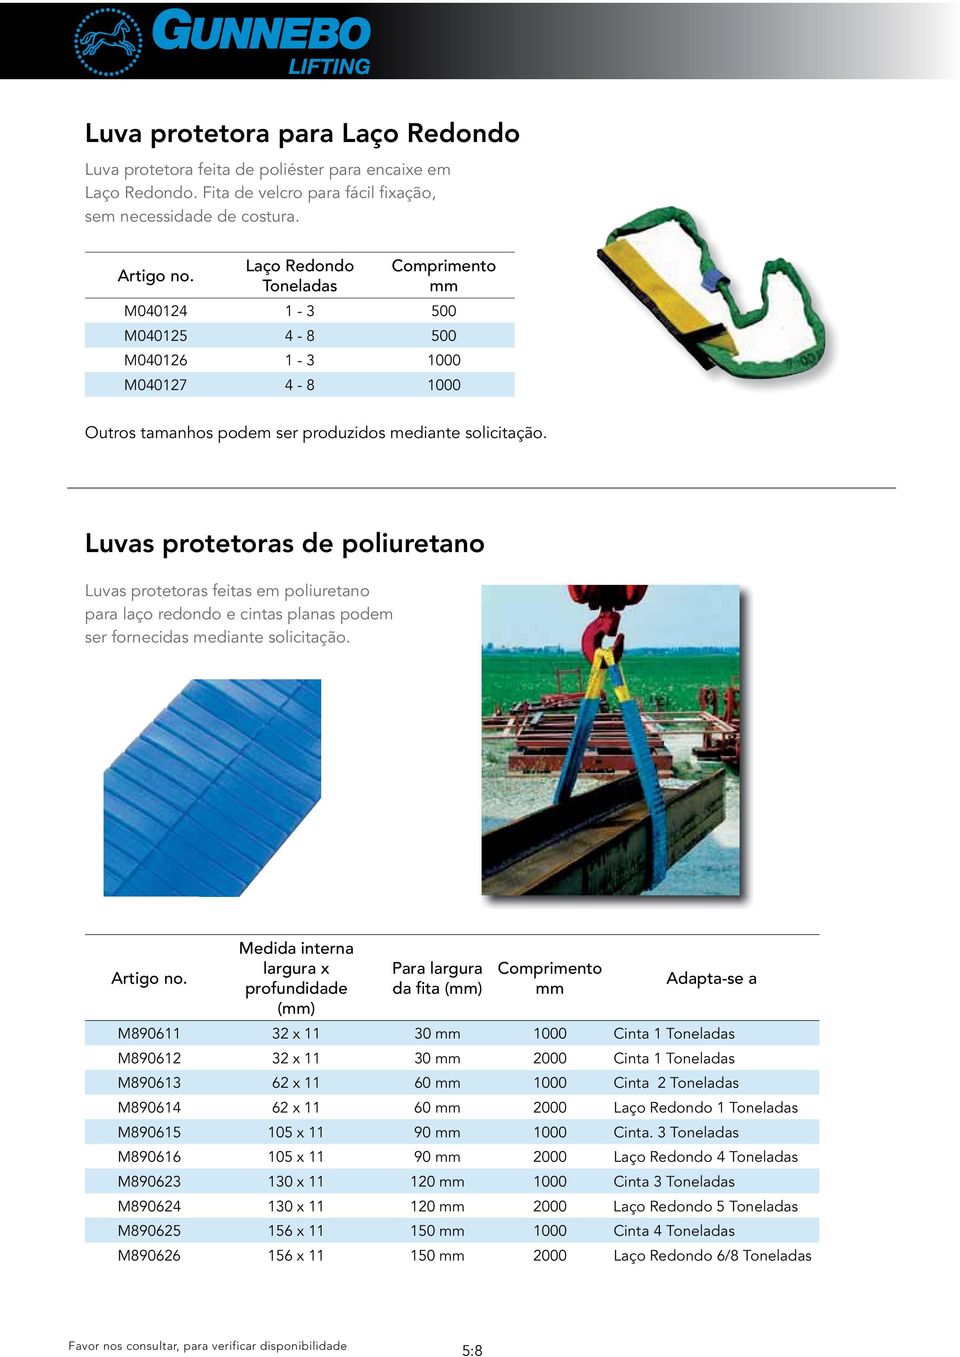 Luvas protetoras de poliuretano Luvas protetoras feitas em poliuretano para laço redondo e cintas planas podem ser fornecidas mediante solicitação.